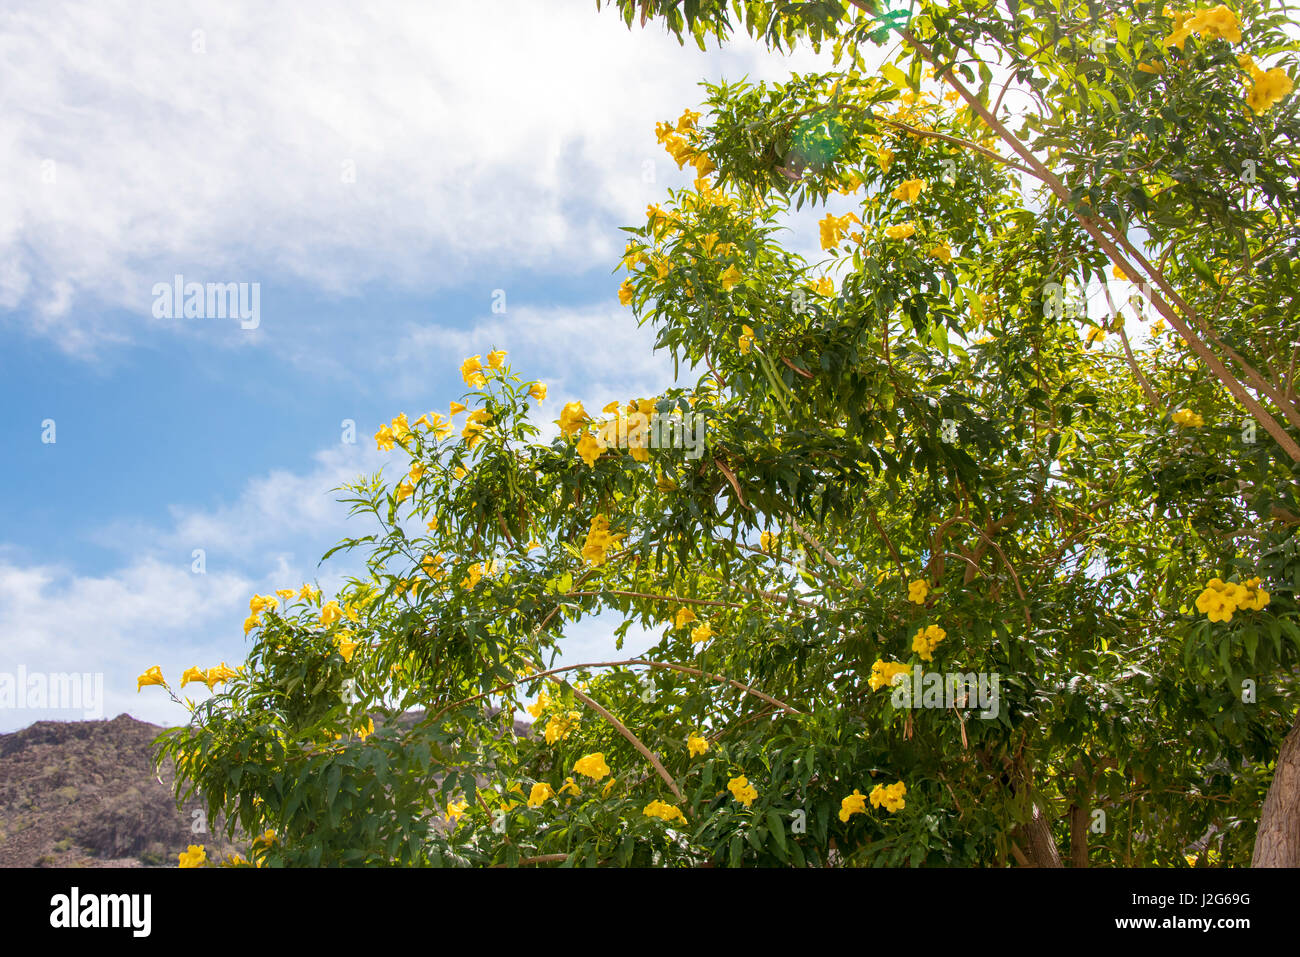 Mexique, Baja California Sur, Loreto. Primavera (mot espagnol pour "printemps") annonce début de saison aux fleurs jaune vif Banque D'Images